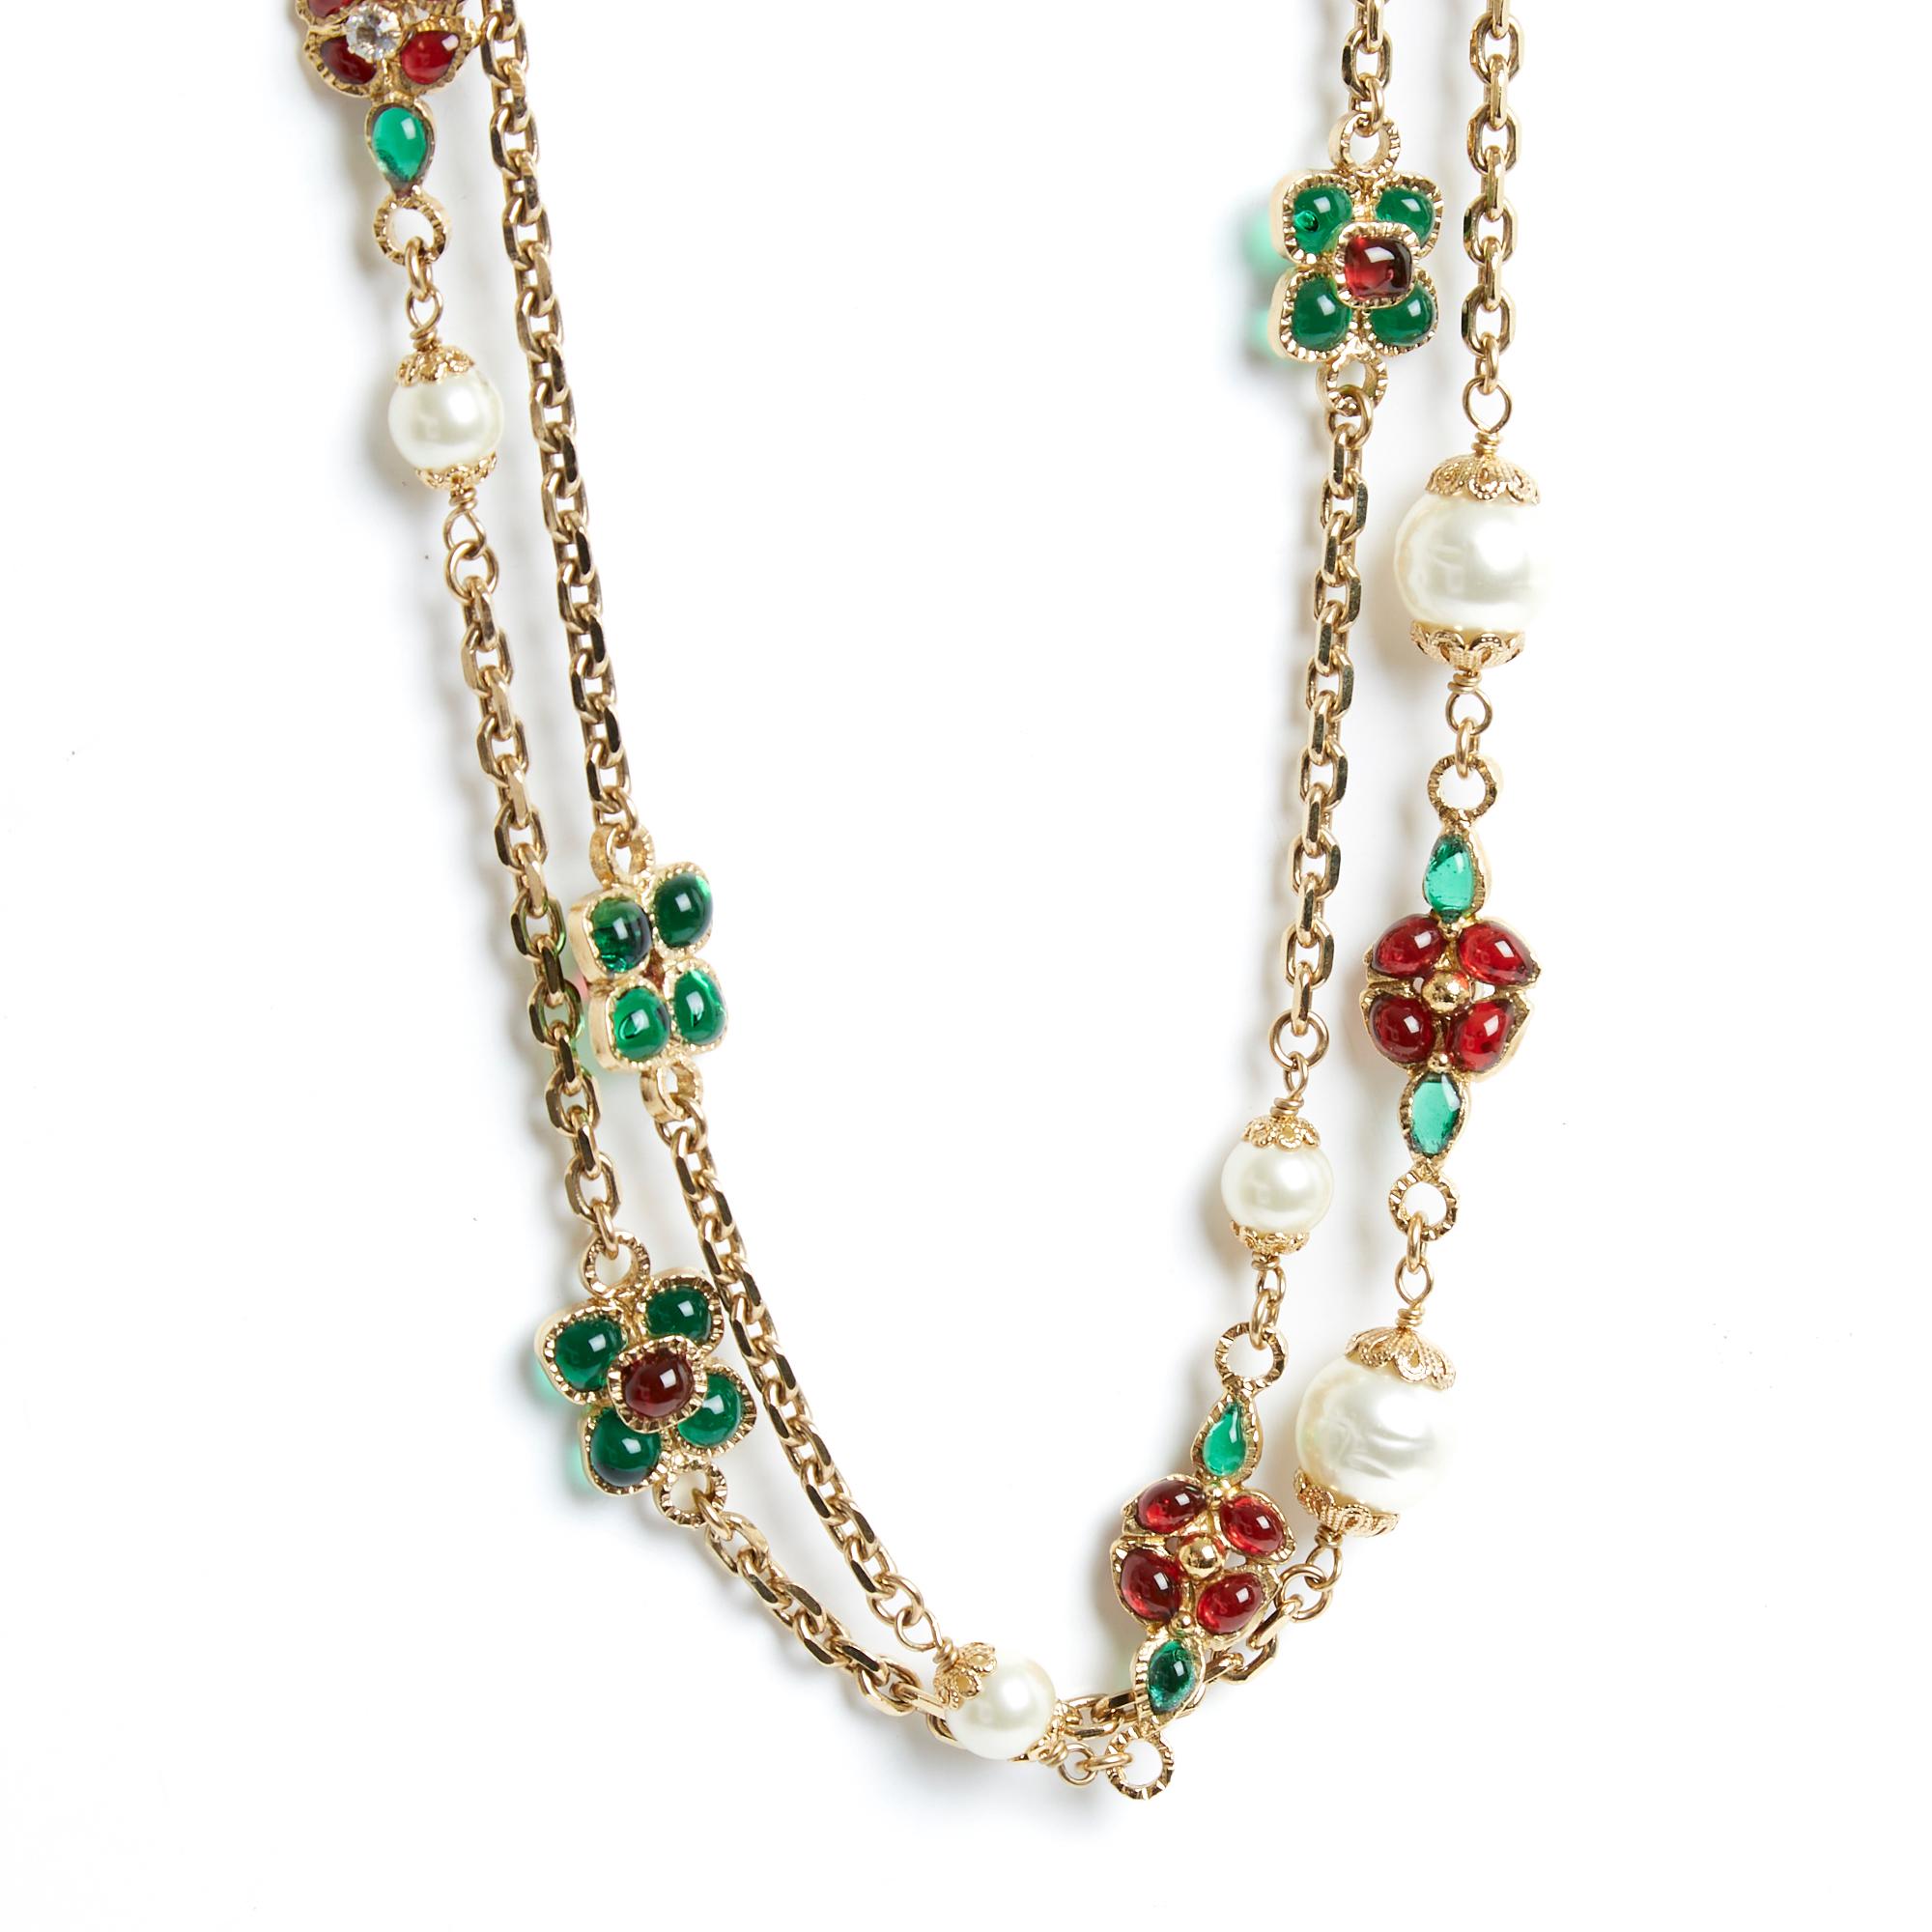 Chanel 2005 Resort collection (Paris Bus Tour) Halskette aus 2 langen Sträflingsketten mit verschiedenen Perlen und Blumenmustern in grüner und roter Glaspaste, Gripoix-Stil, Hakenverschluss mit 2 Cabochons, signiert. Gesamtlänge des offenen